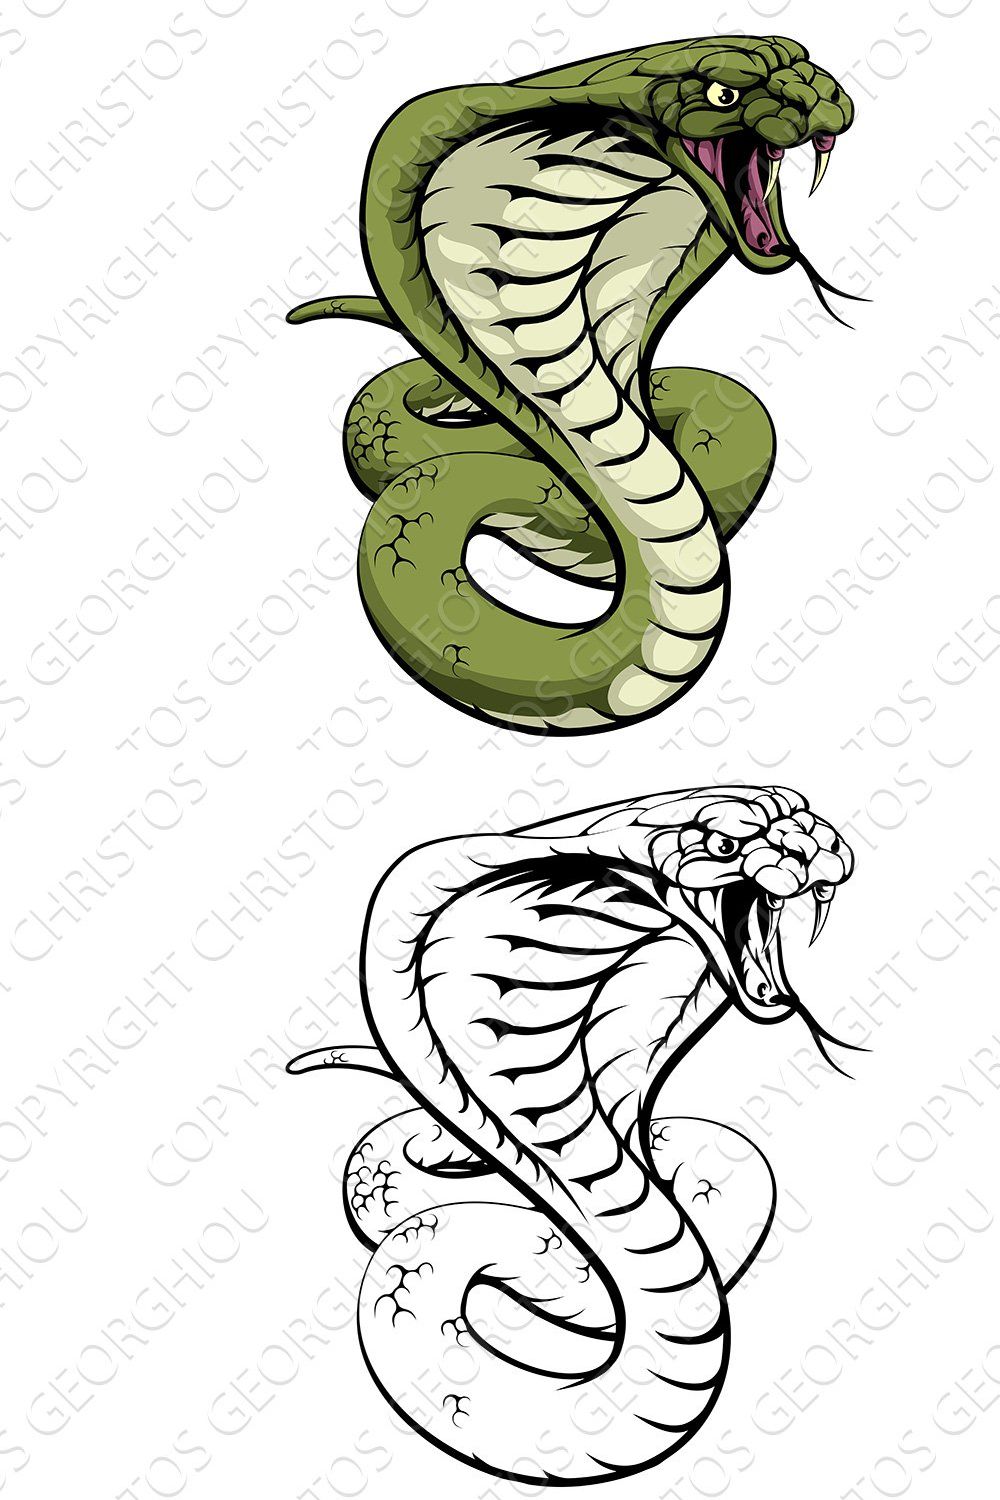 King Cobra Snake pinterest preview image.